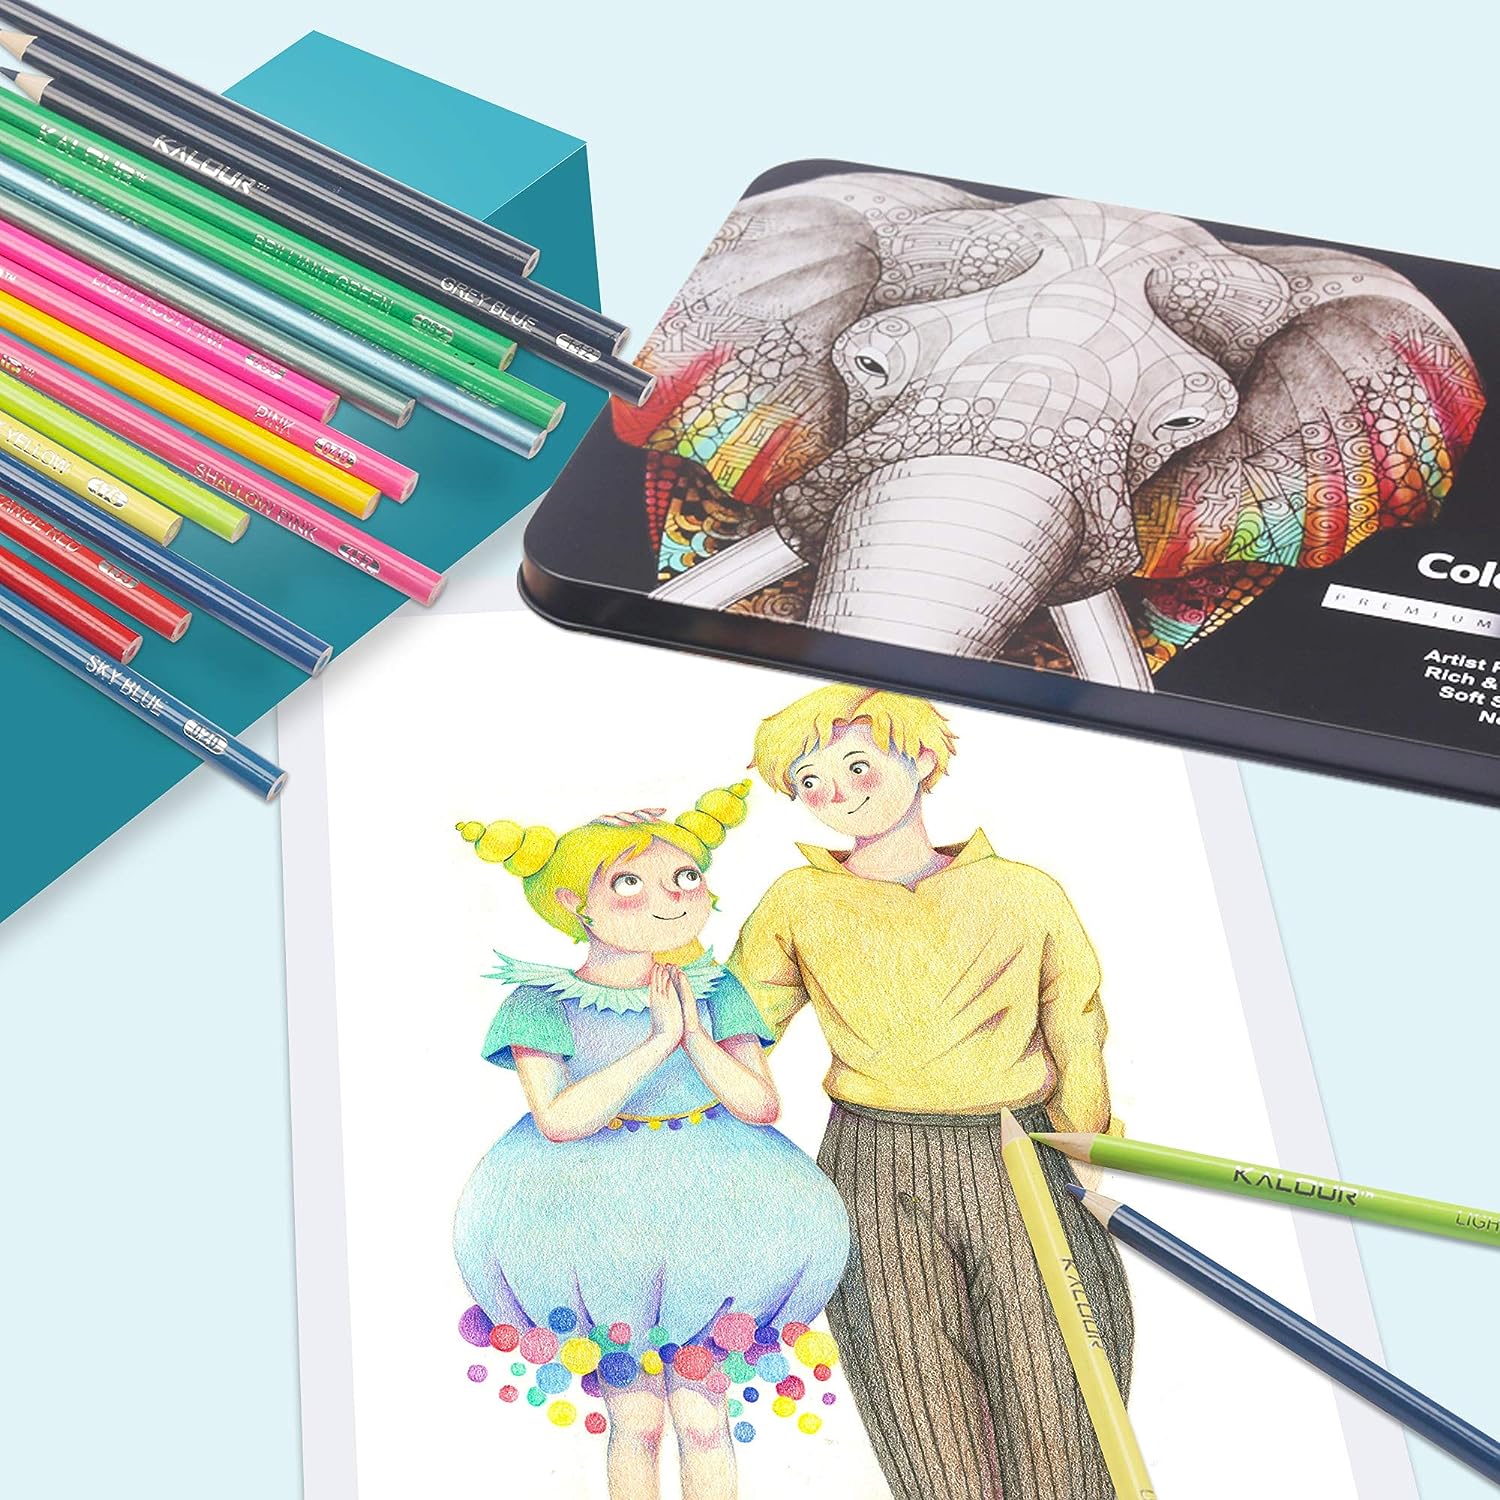 KALOUR300 Colors Colored Pencils Set Artists Soft Core Vibrant